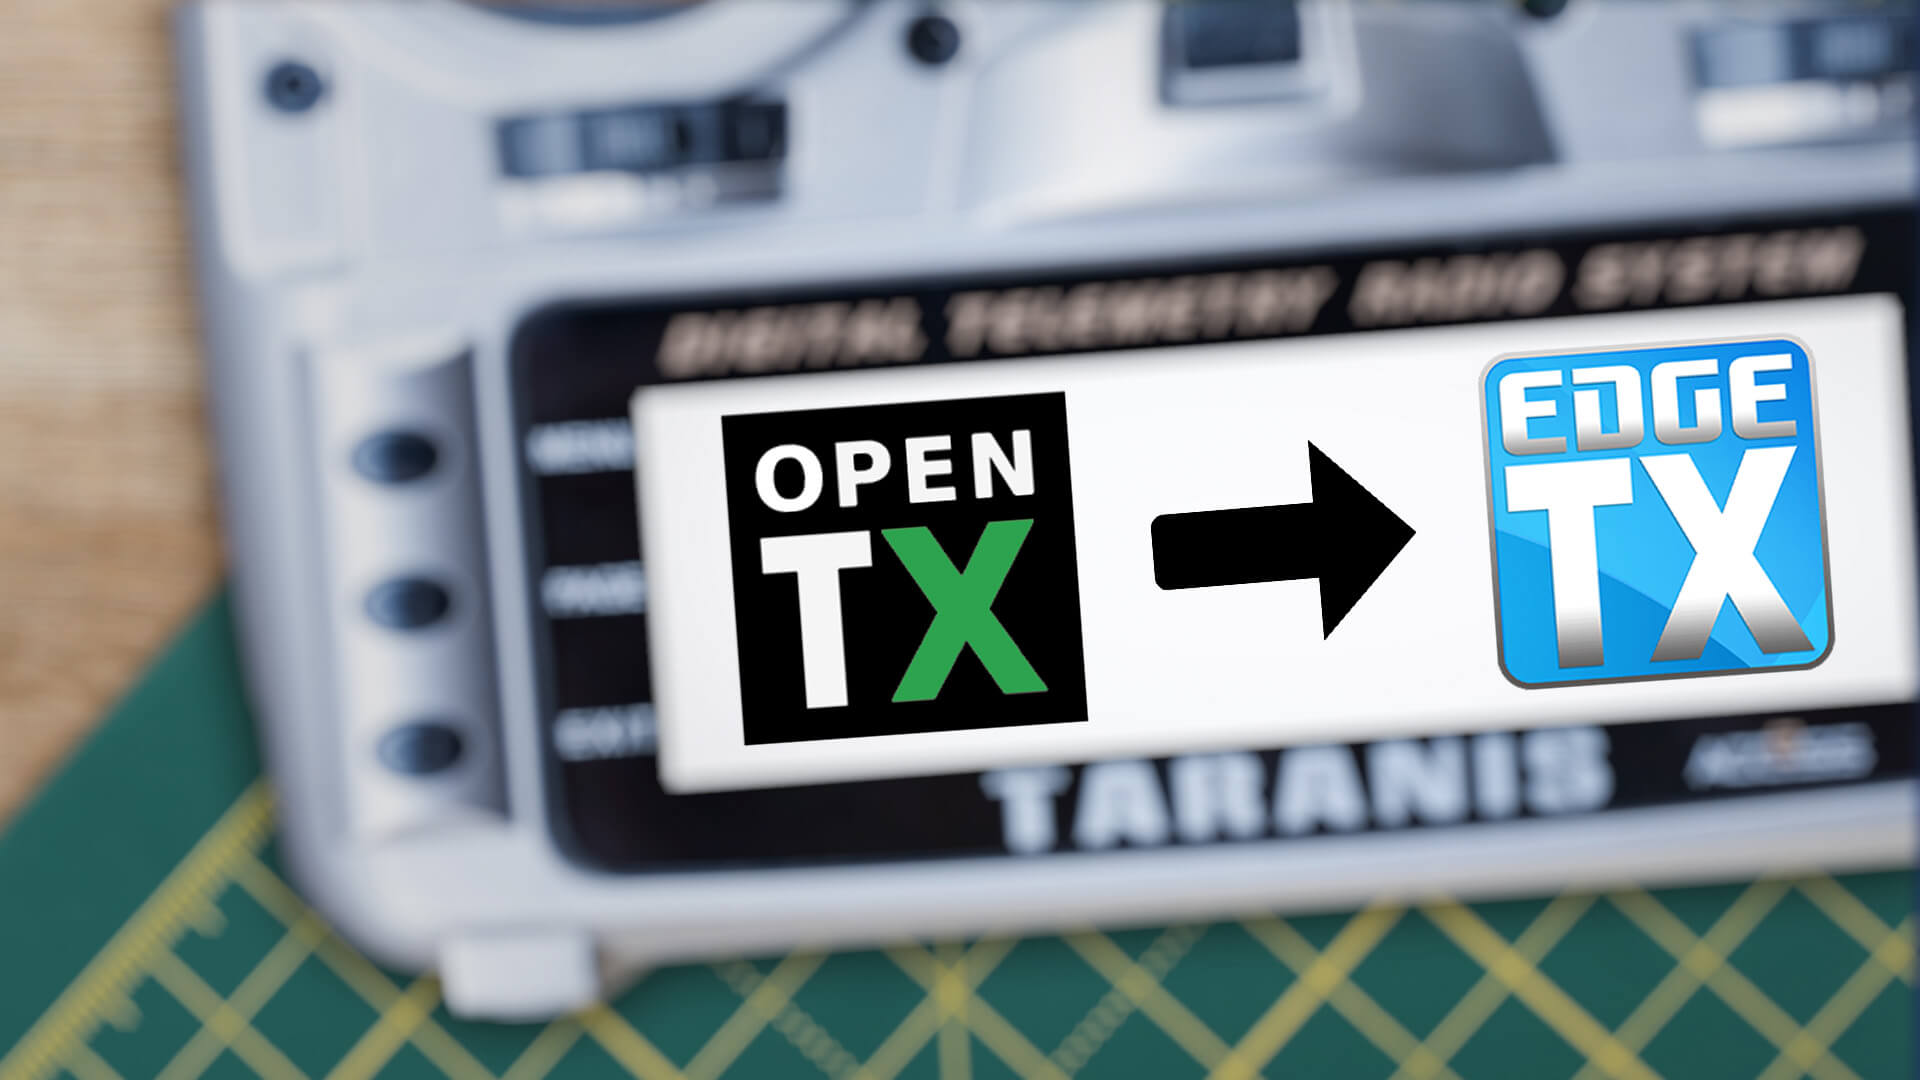 Anleitung: Wie man von OpenTX zu EdgeTX wechselt